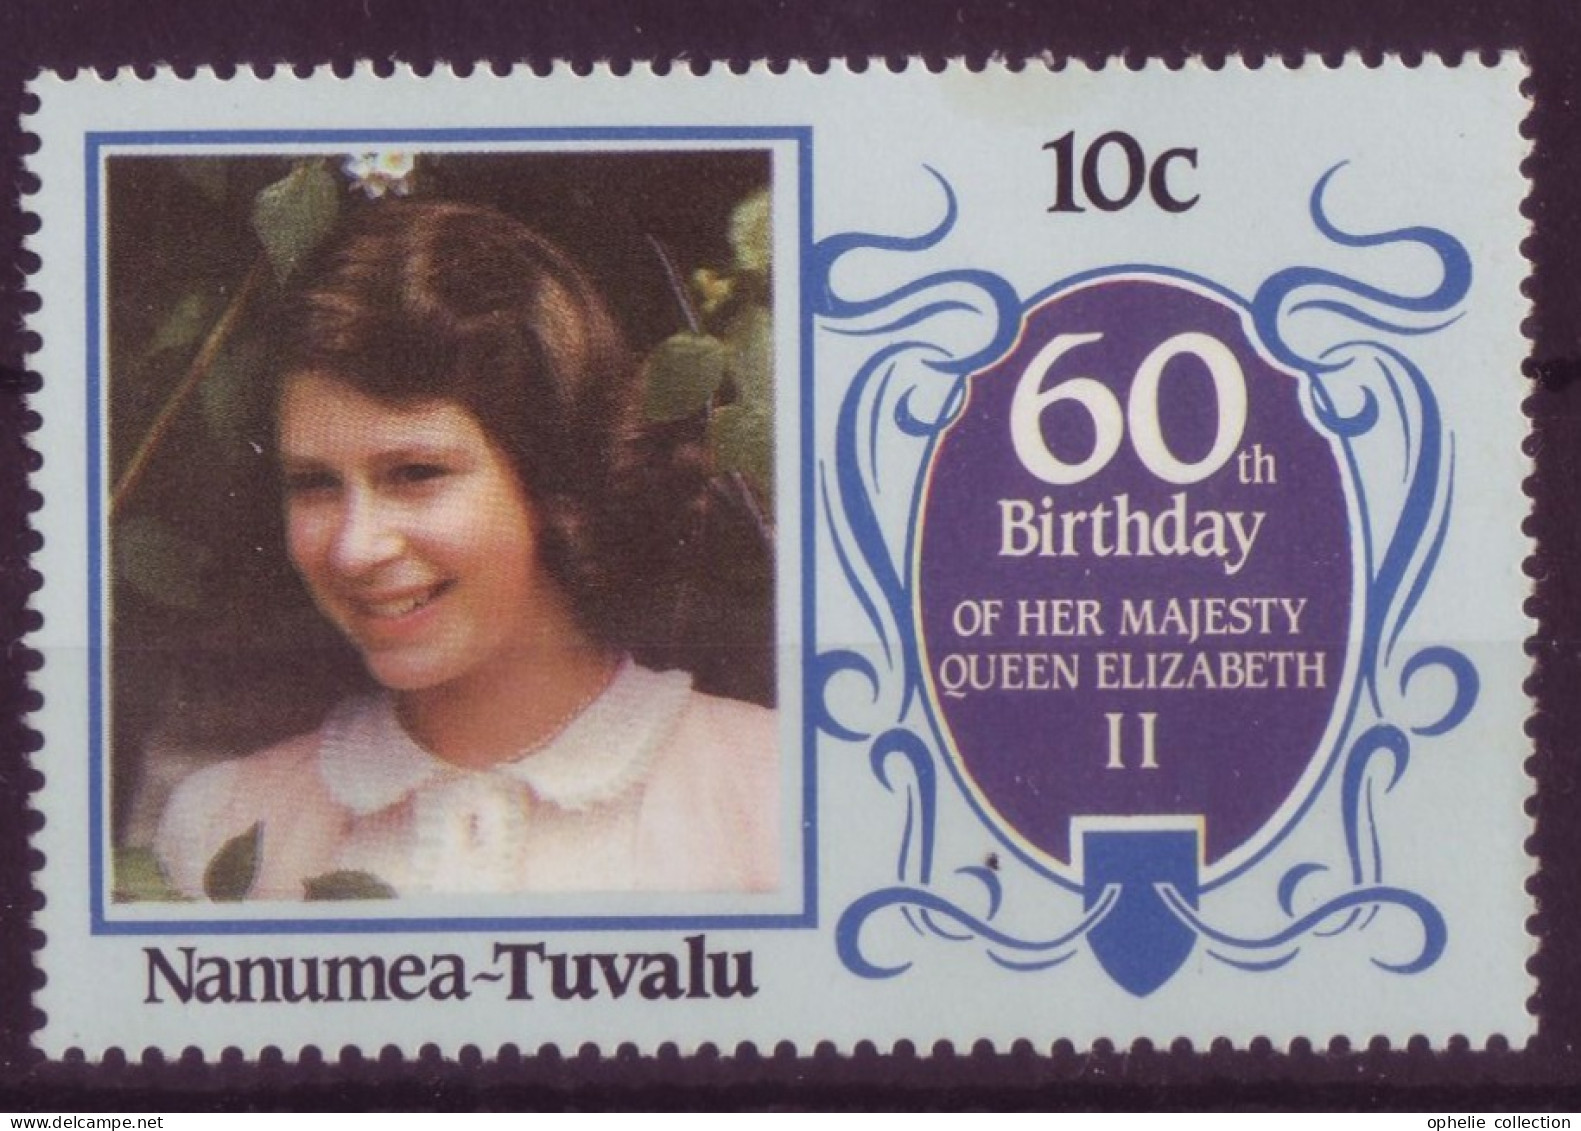 Océanie - Tuvalu - Nanumea - 60th Birthday Of Her Majesty Queen Elisabeth II  - 7336 - Tuvalu